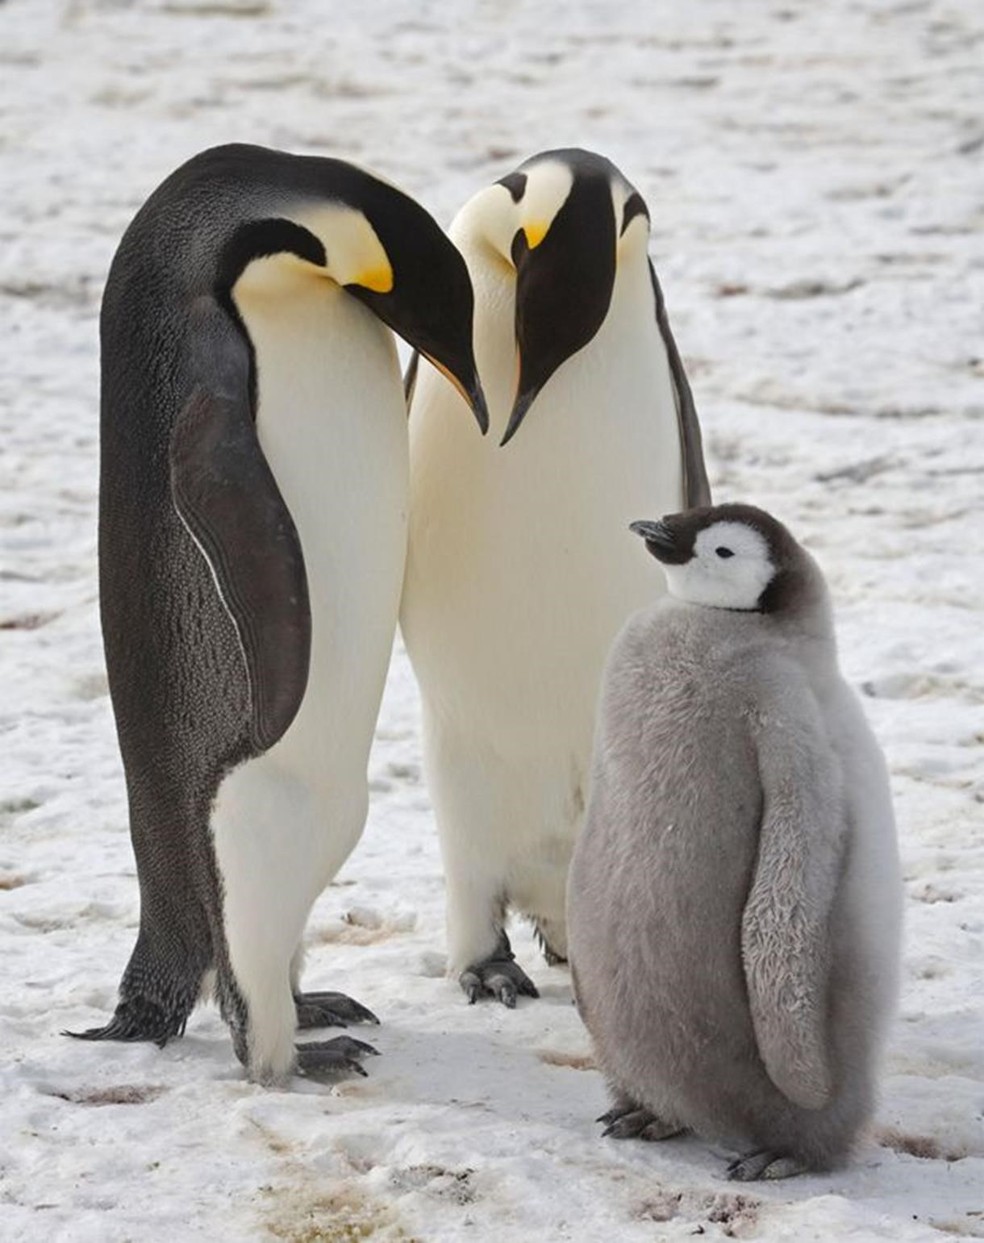 Os imperadores são a espécie de pinguim mais alta e pesada — Foto: CHRISTOPHER WALTON